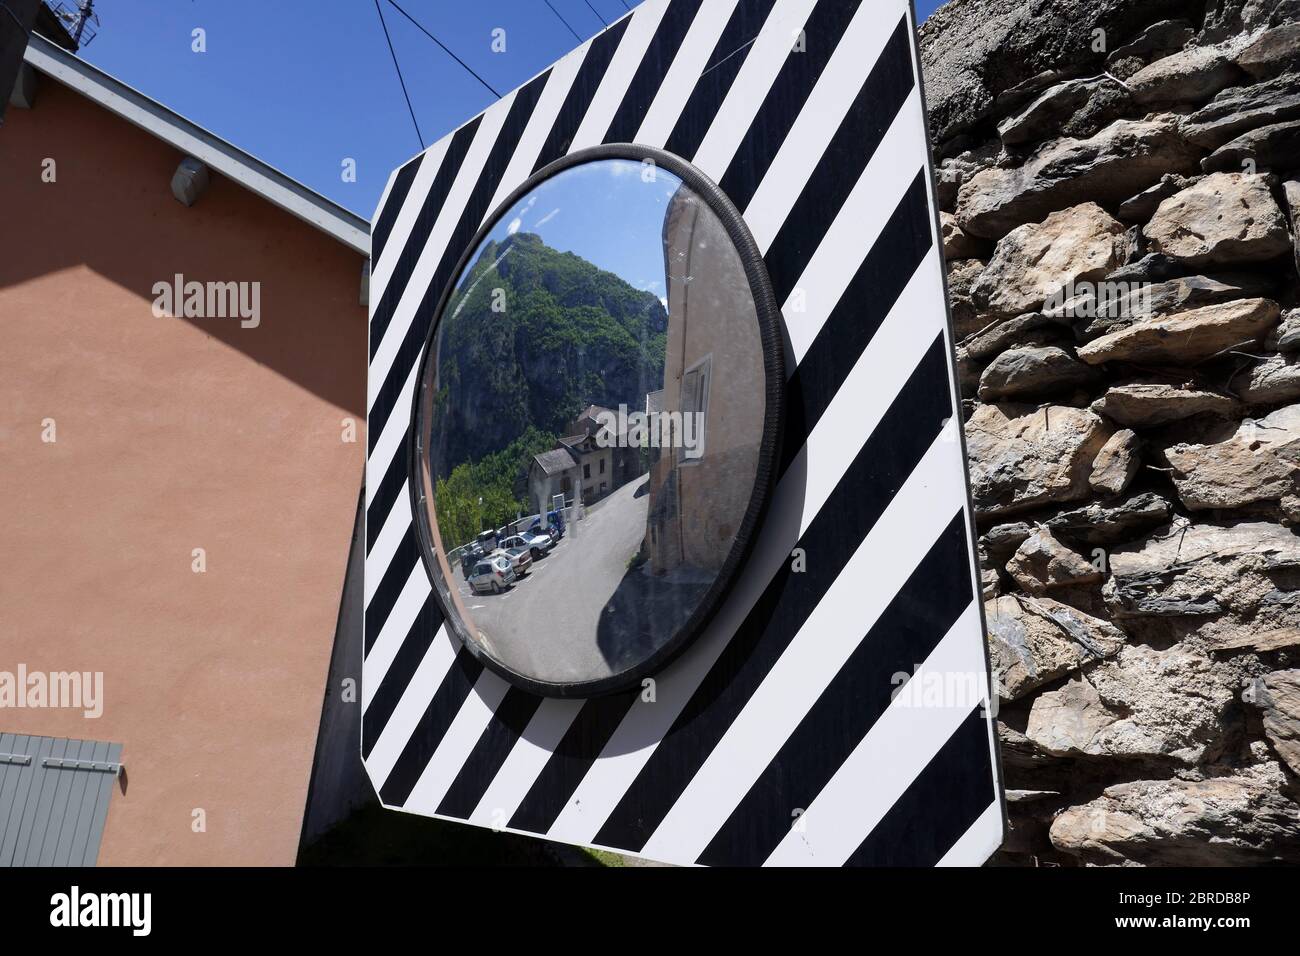 Miroir pour voir la circulation autour d'un virage, Ornolac Ussat les bains, Ariège, Pyrénées françaises, France Banque D'Images